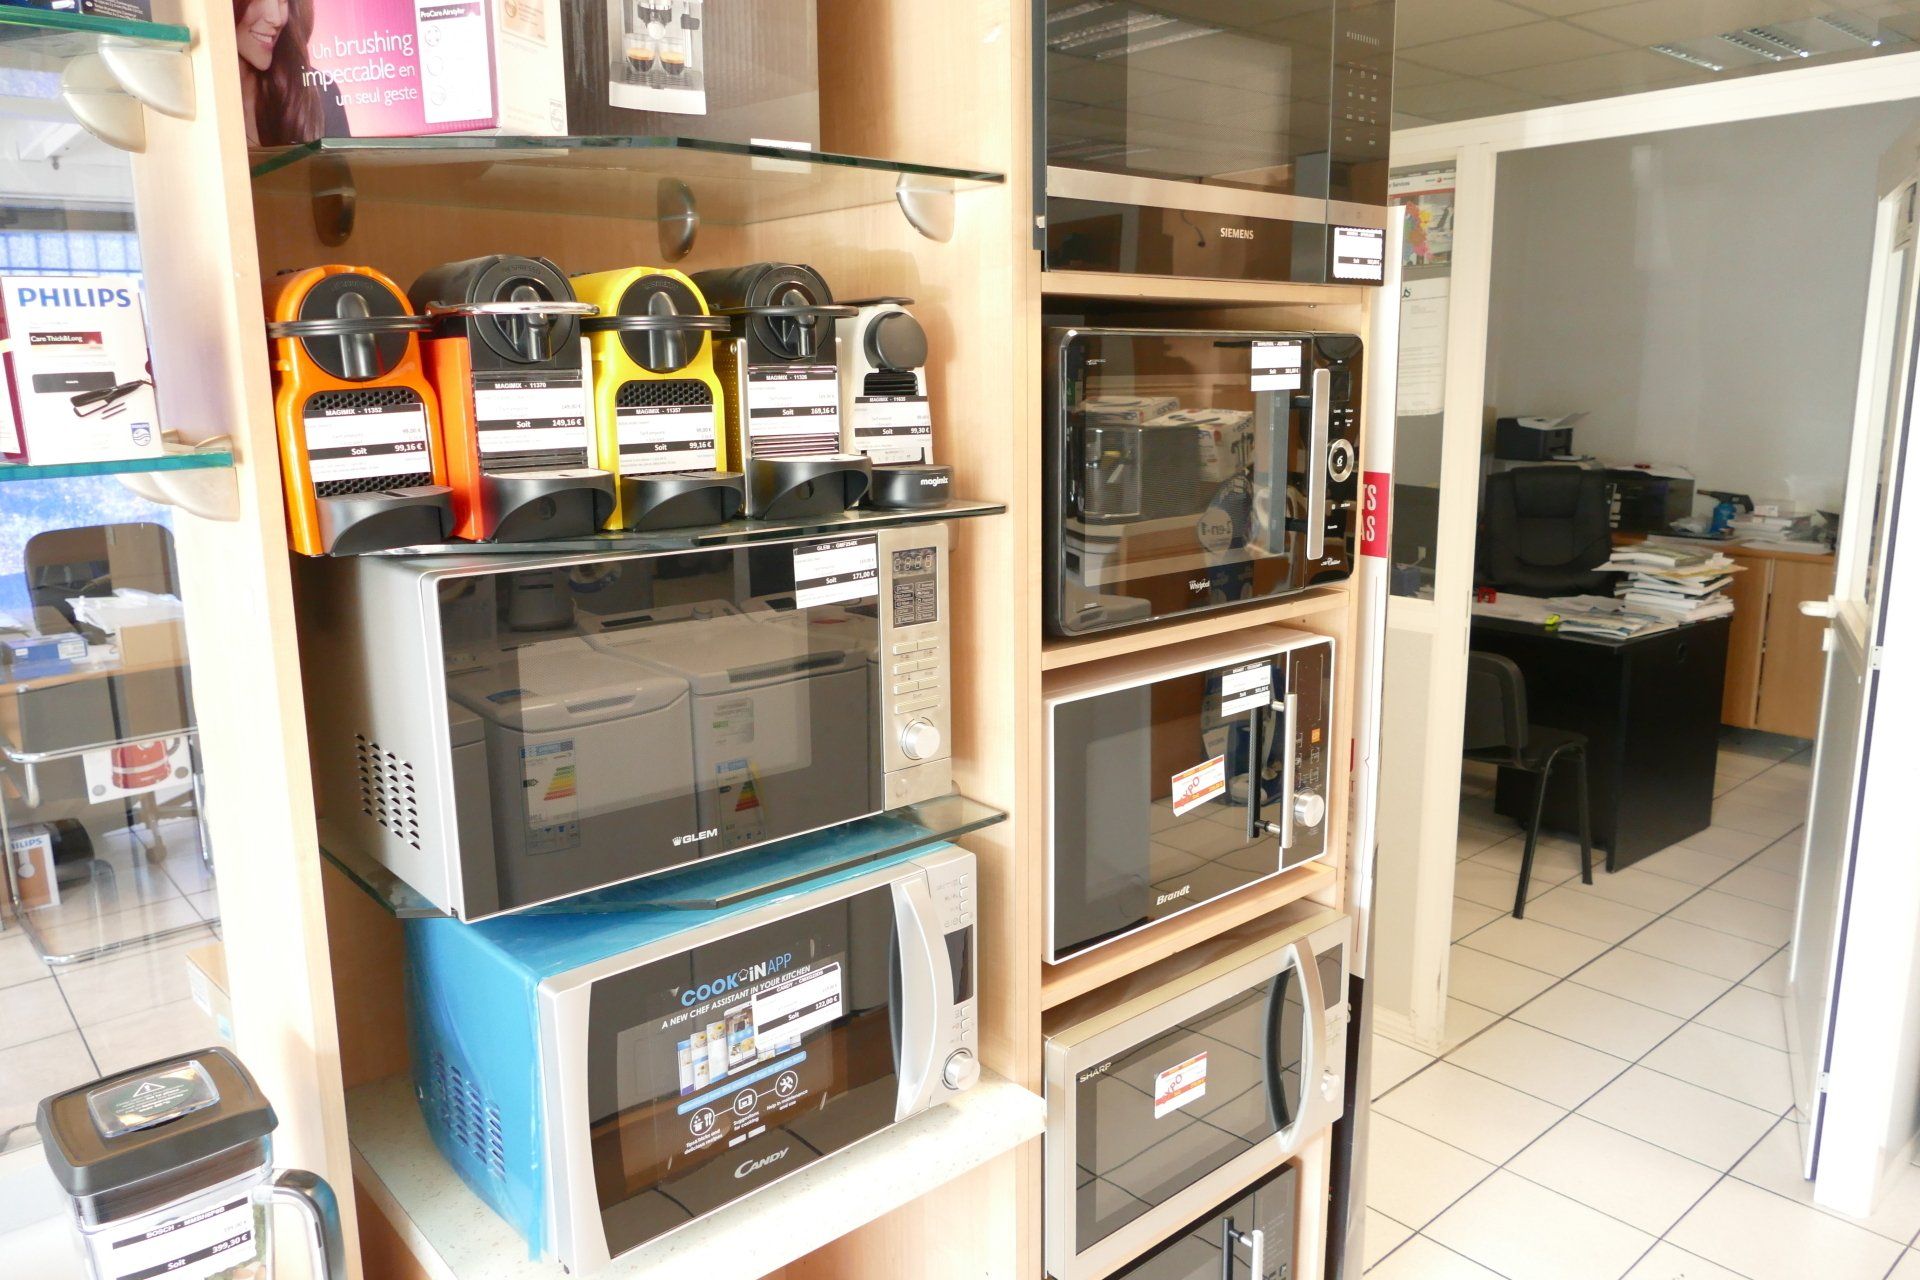 Sélection de micro-ondes et machines à café exposés dans le rayon d'un magasin